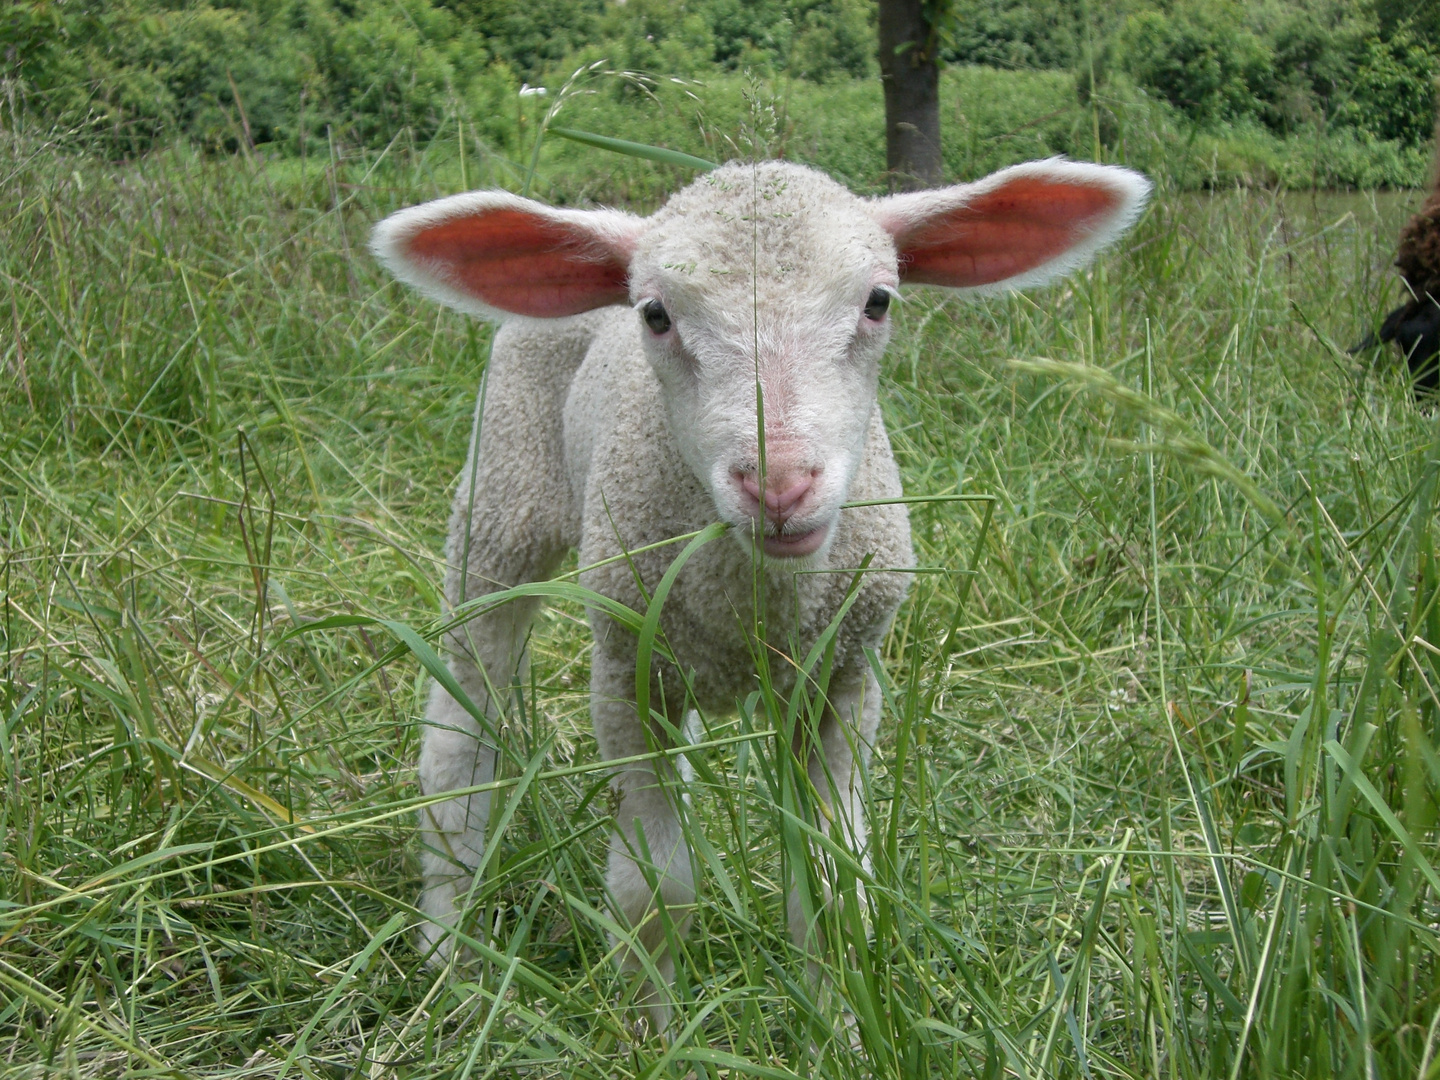 Ein junges Schaf auf der grünen Wiese